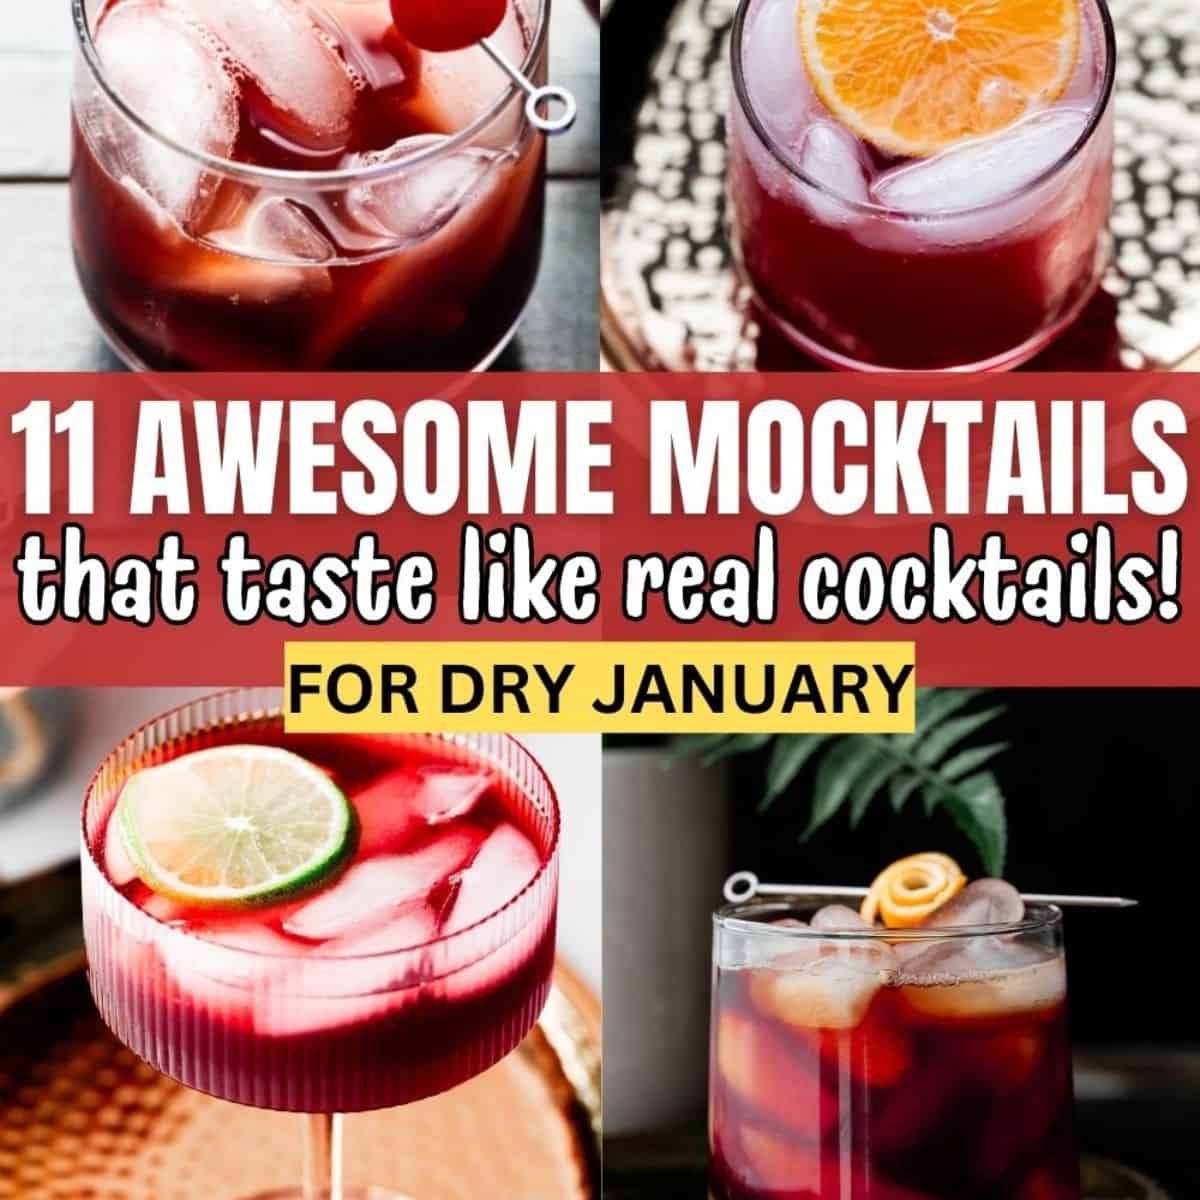 mocktails that taste like cocktails image collage.